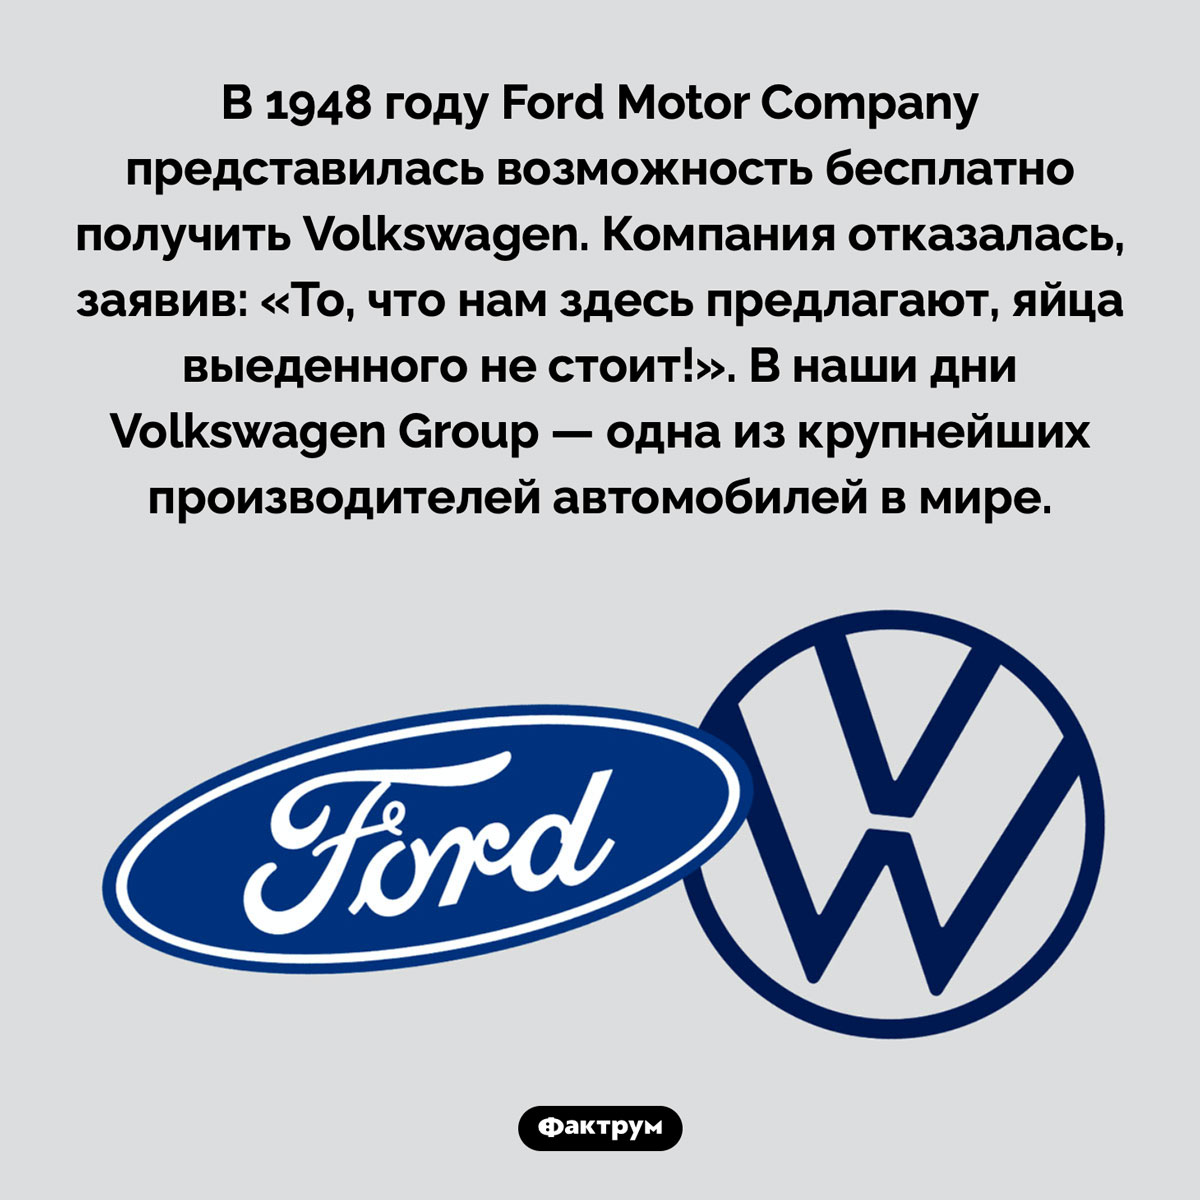 Как «Форд» отказался от «Фольксвагена». В 1948 году Ford Motor Company представилась возможность бесплатно получить Volkswagen. Компания отказалась, заявив: «То, что нам здесь предлагают, яйца выеденного не стоит!». В наши дни Volkswagen Group — одна из крупнейших производителей автомобилей в мире.